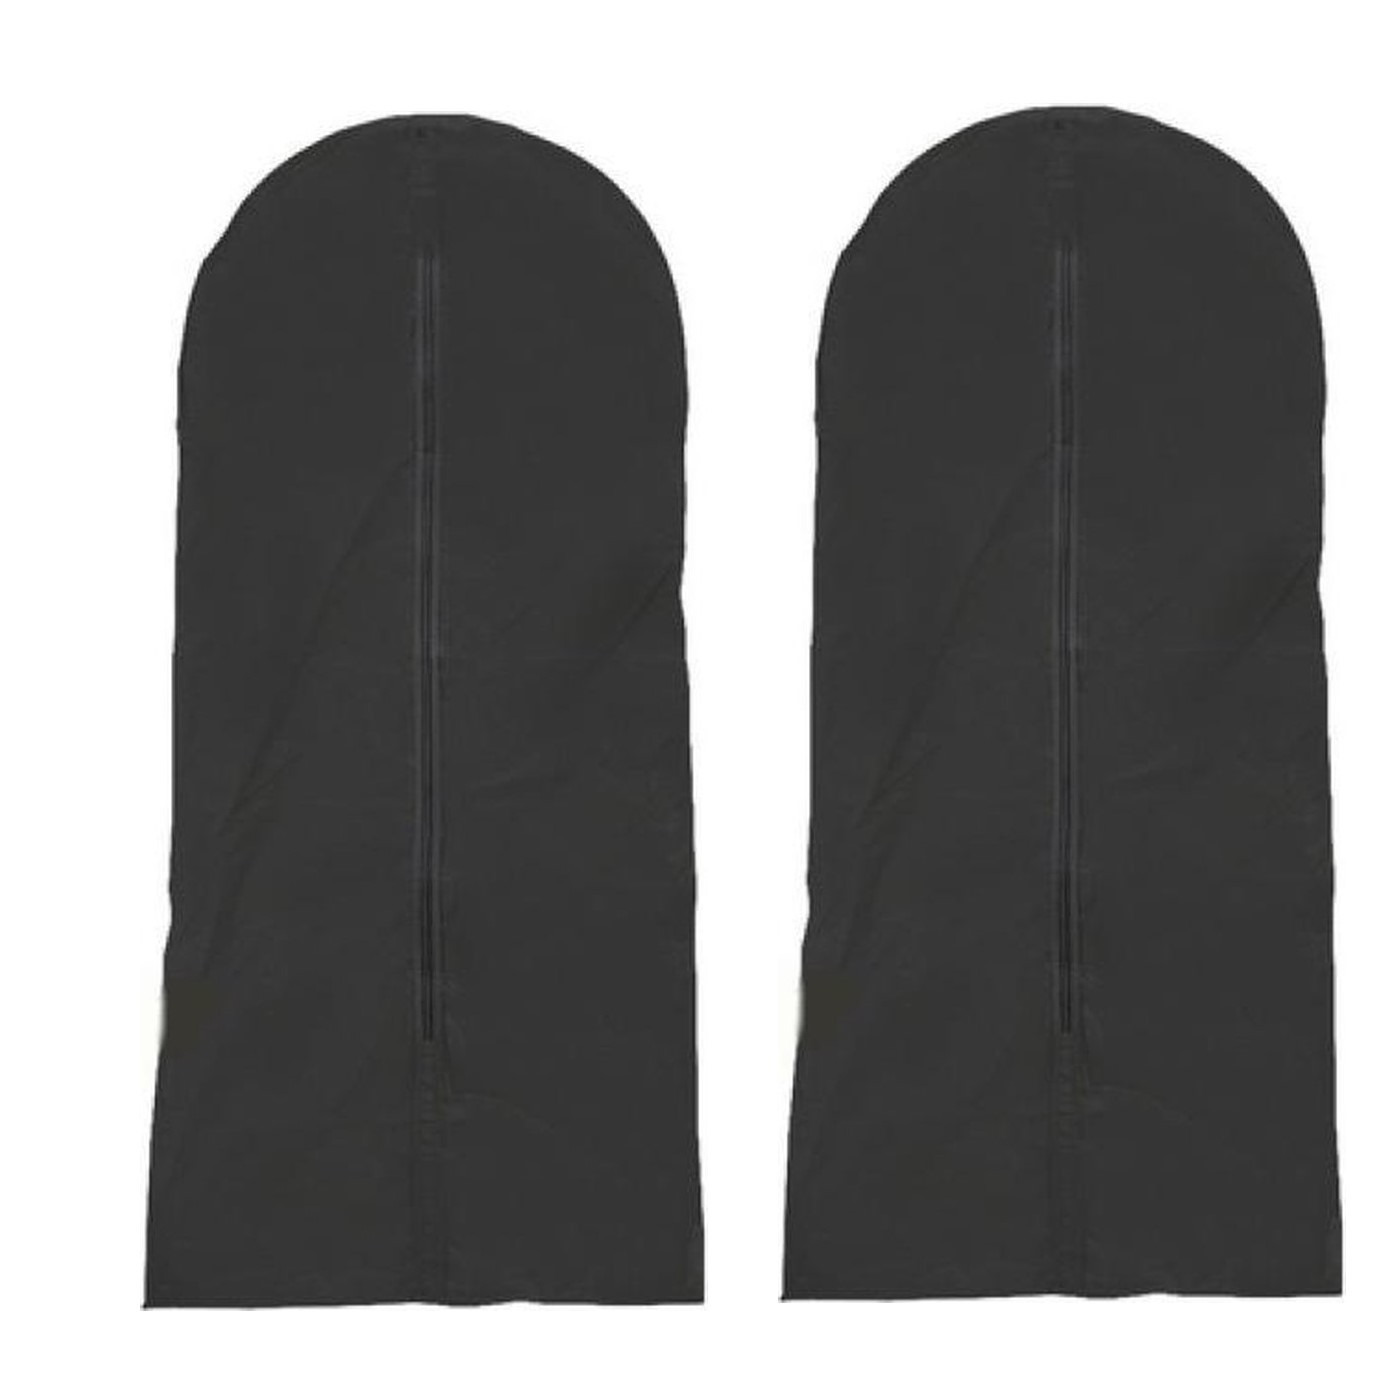 Merkloos 3x stuks zwarte kledinghoes 137 x 60 cm -